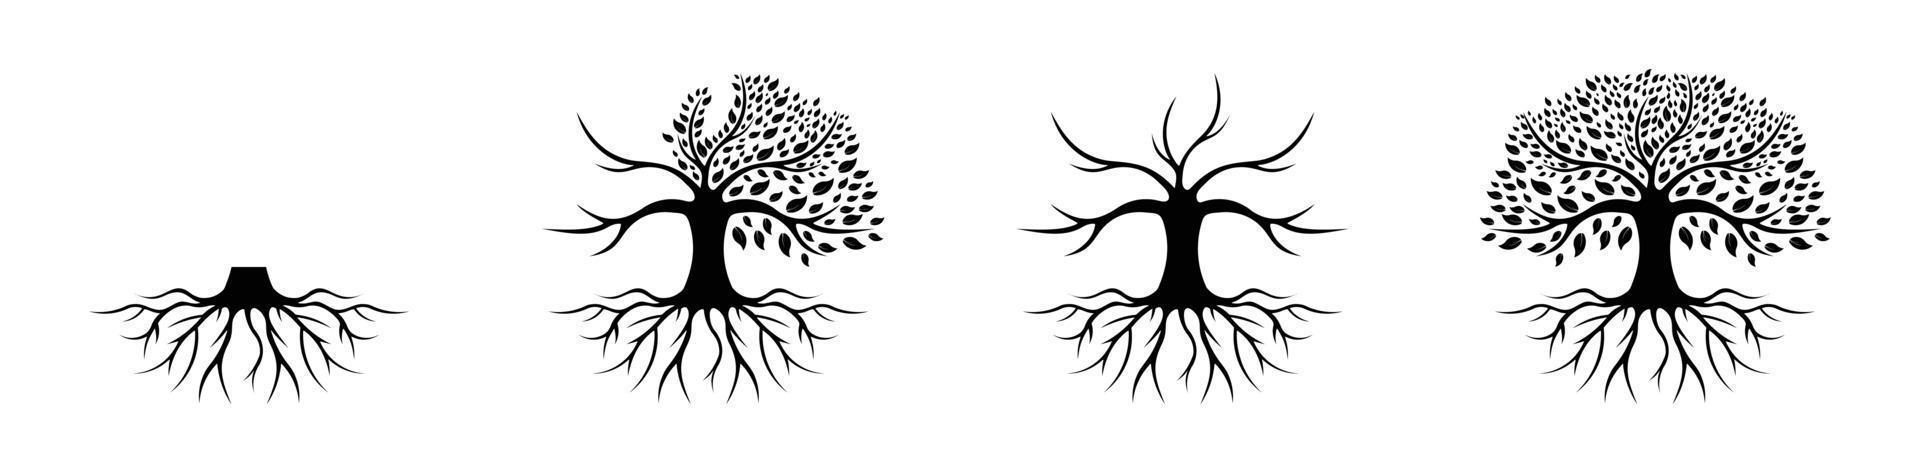 levensboom logo ontwerp inspiratie geïsoleerd op een witte achtergrond, zwarte eik logo en wortels ontwerp vectorillustratie vector